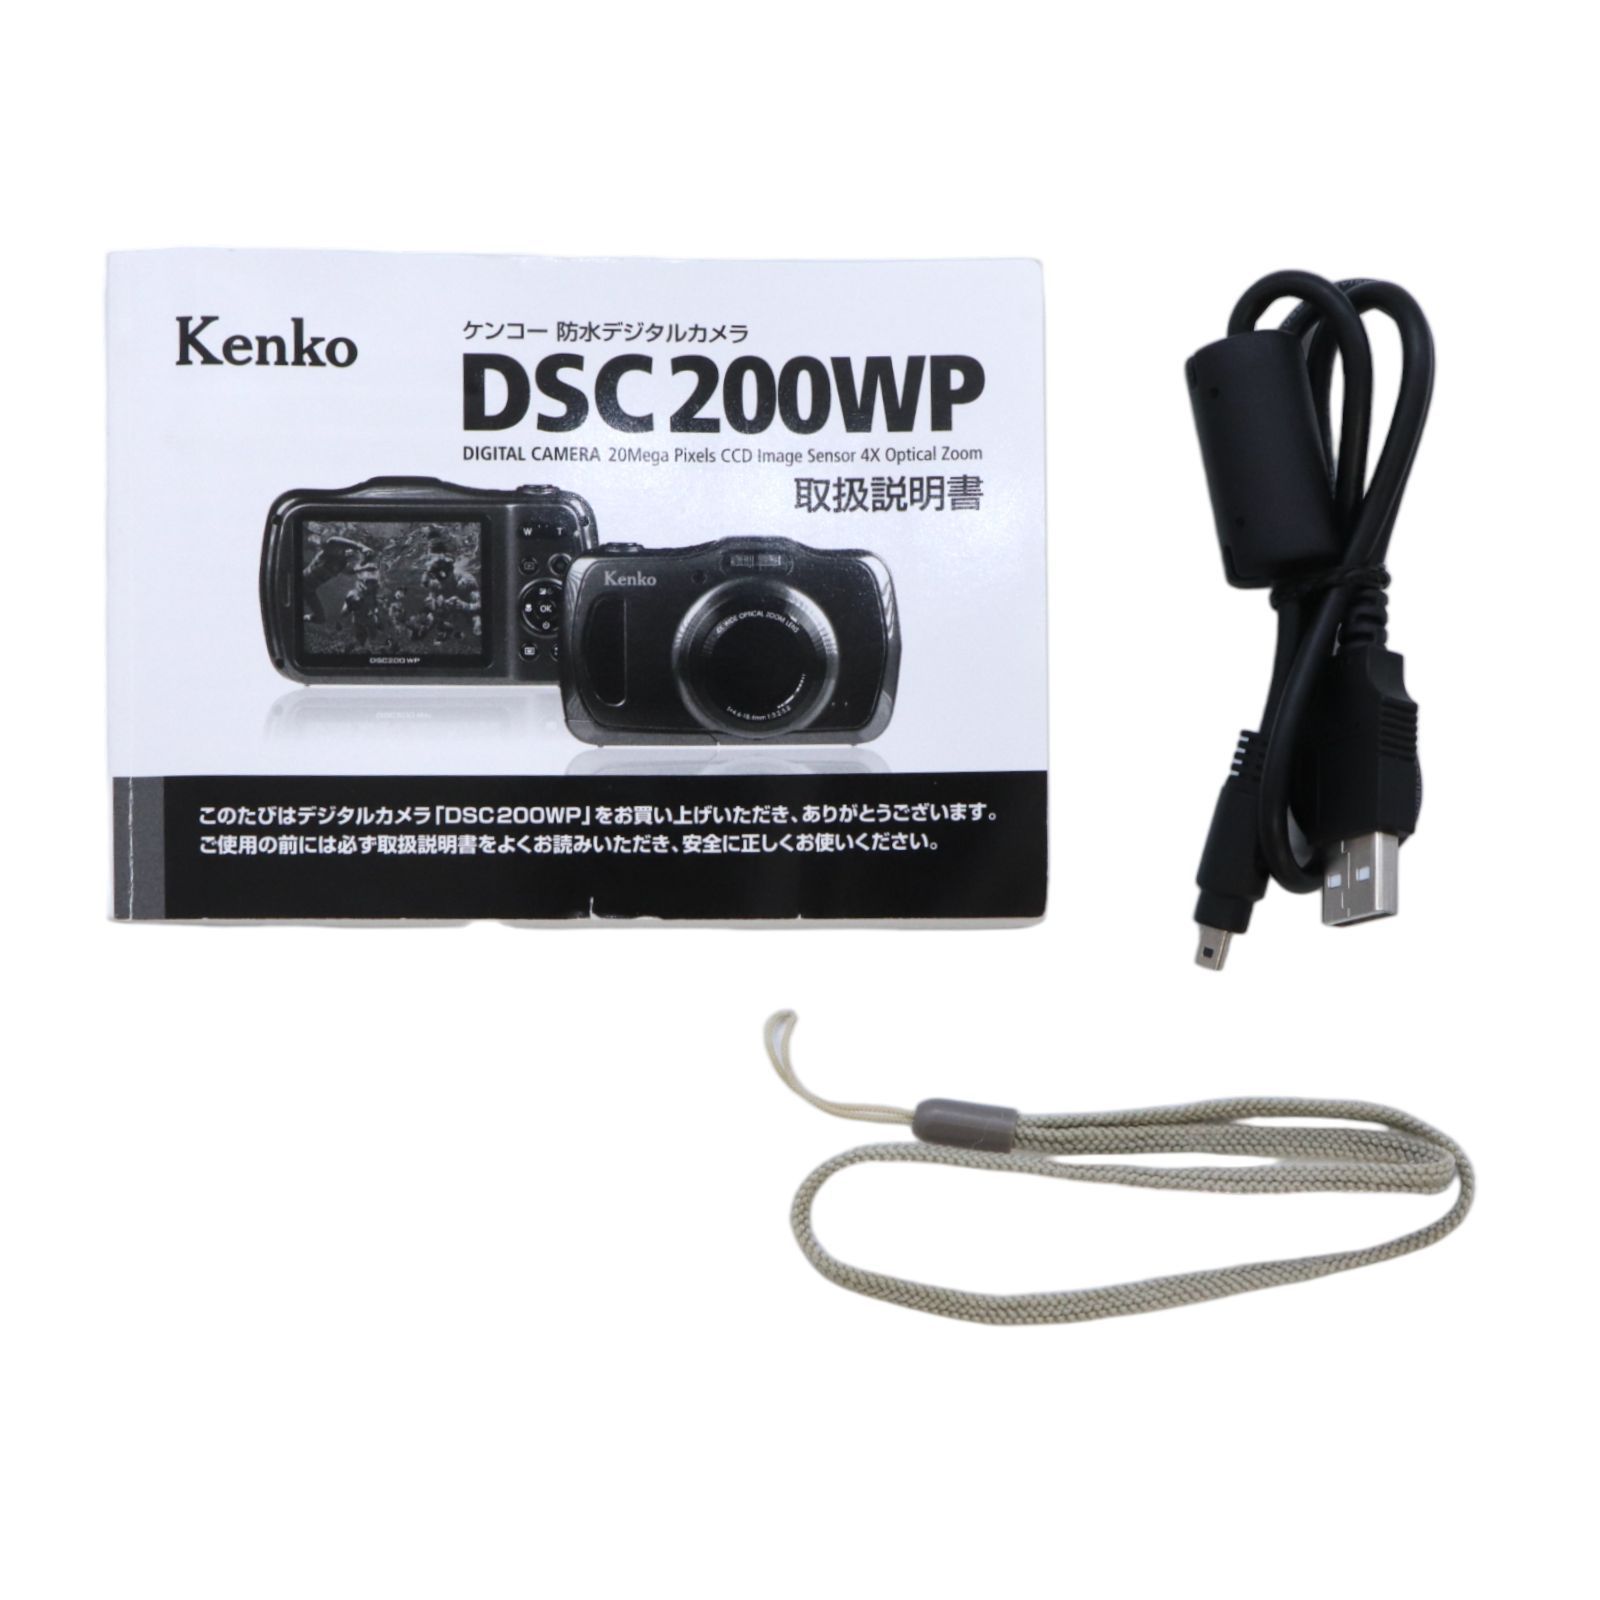 防水デジカメ　Kenko DSC200WP  箱・説明書・SDカード付きKenko